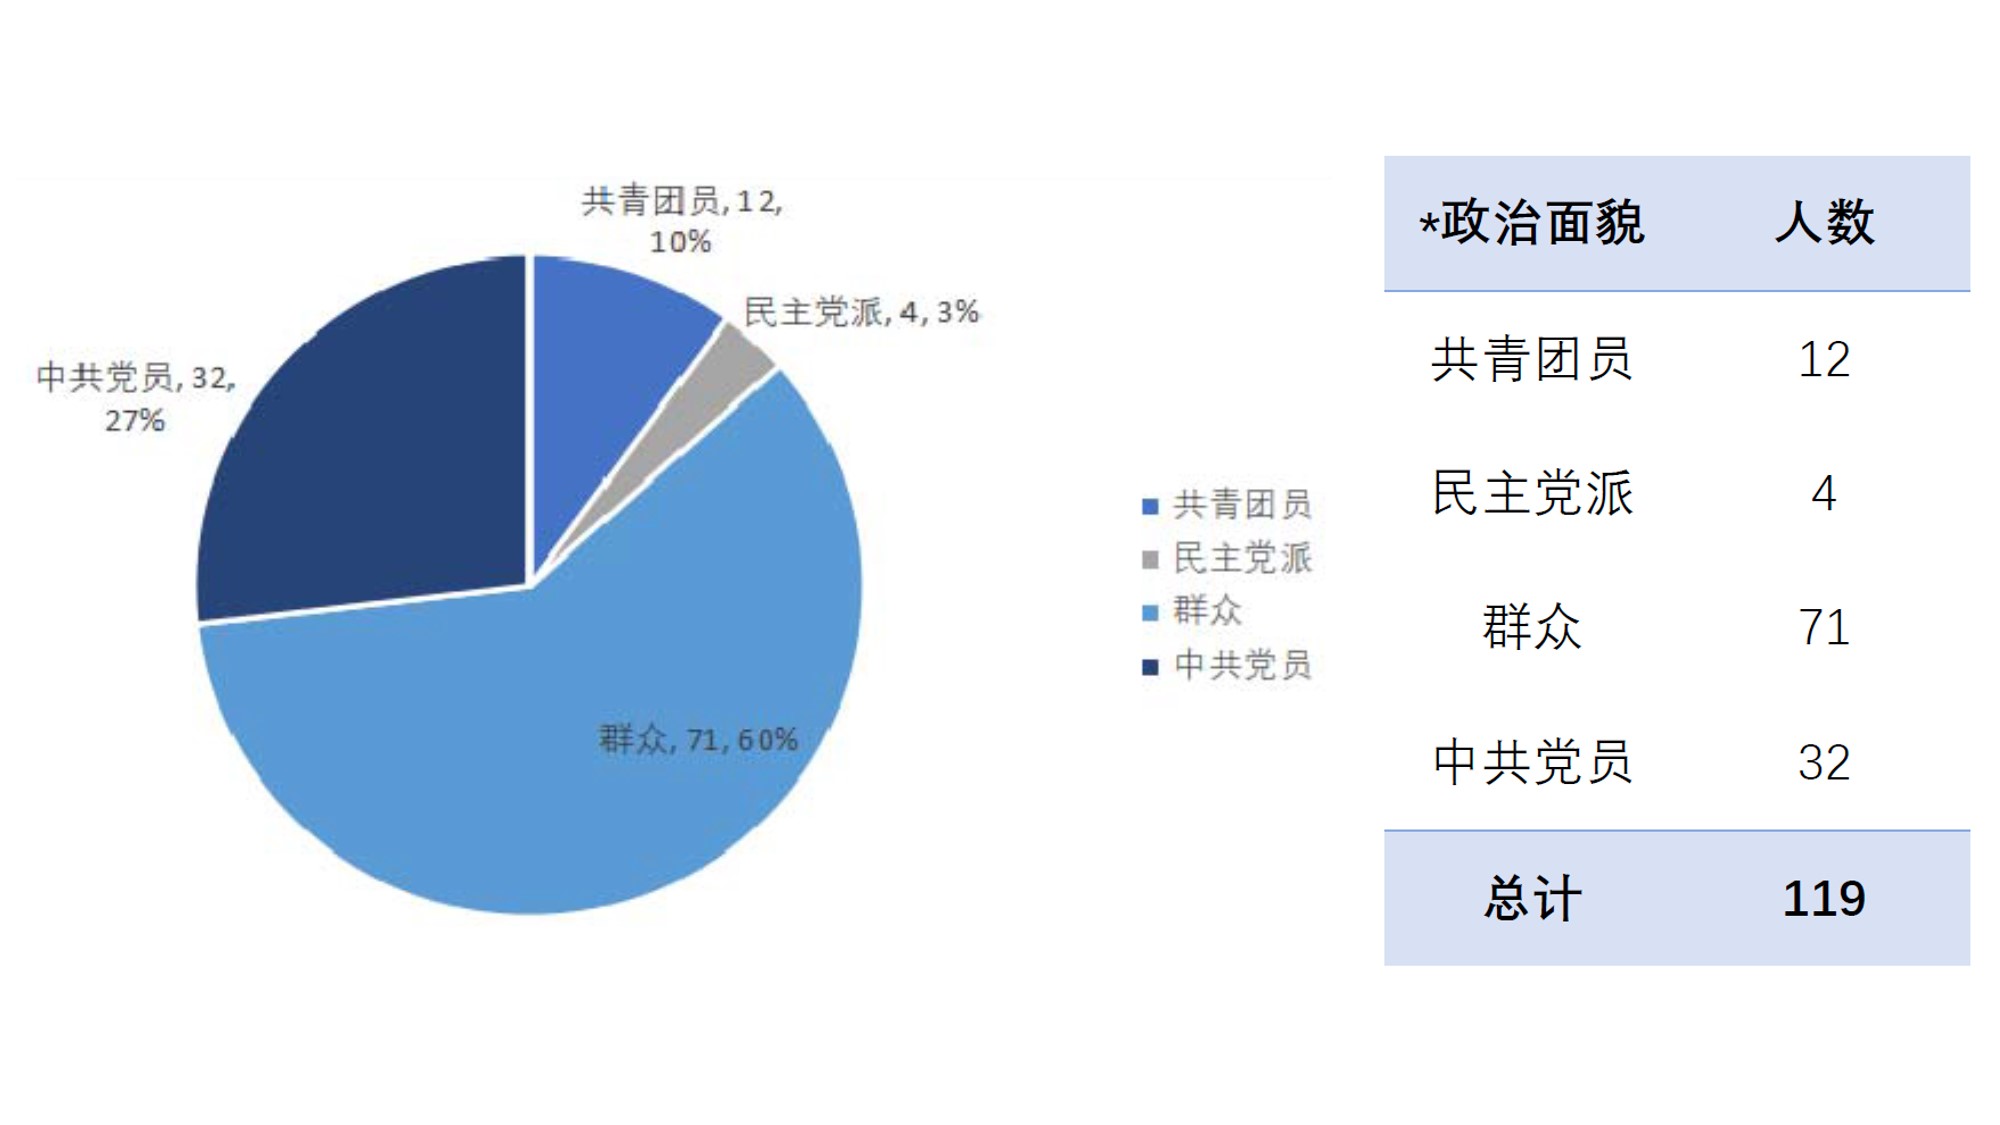 报名人员中，共有群众71人、民主党派4人、共青团员12名和中共党员32名，分别占比60%、3%、10%和27%。